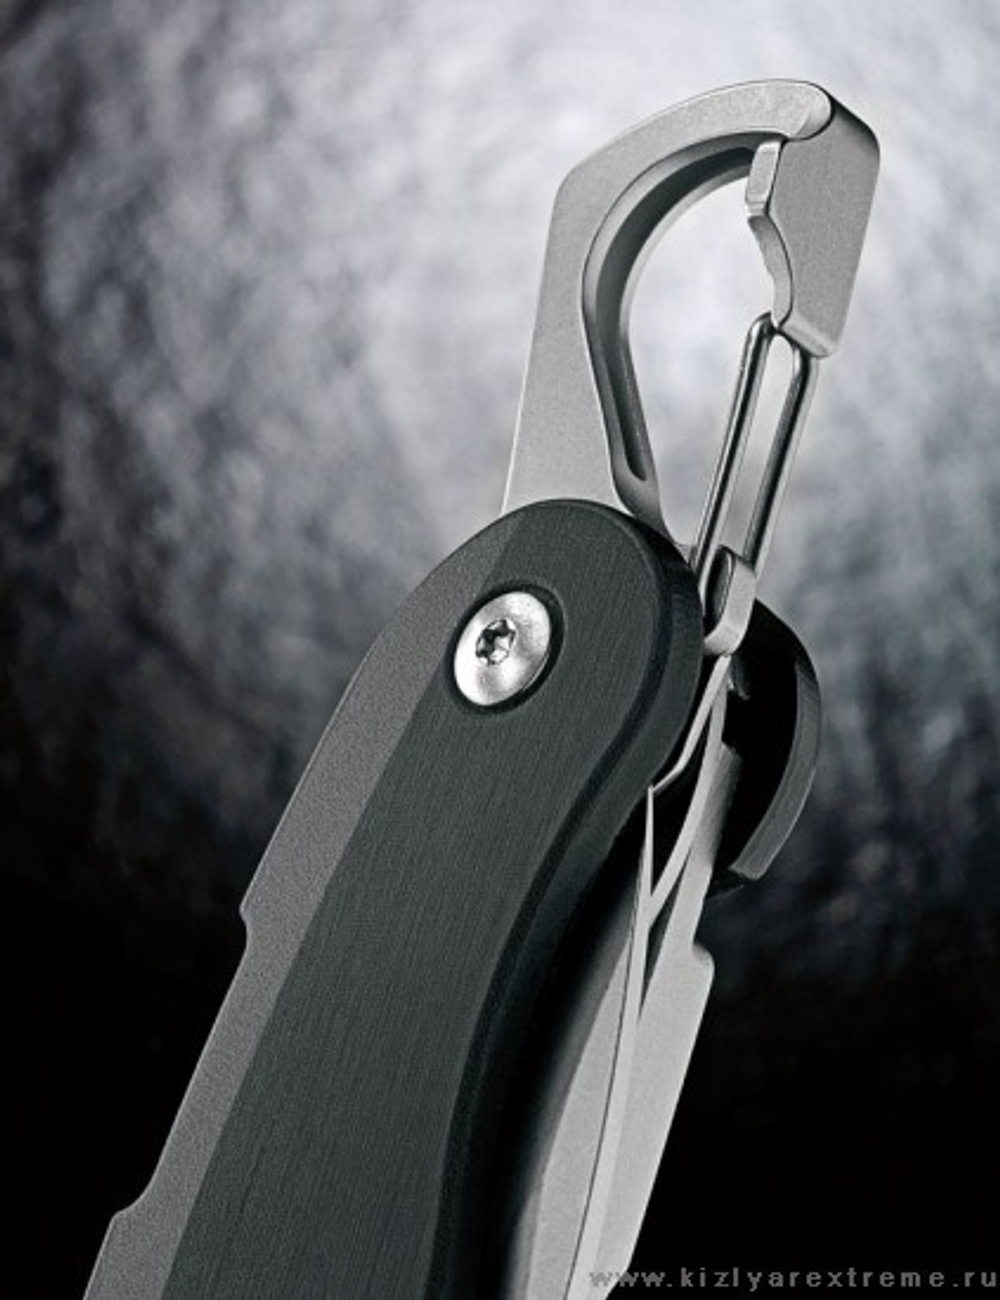 Складной нож c33L (2 опции в одном) полуавтомат